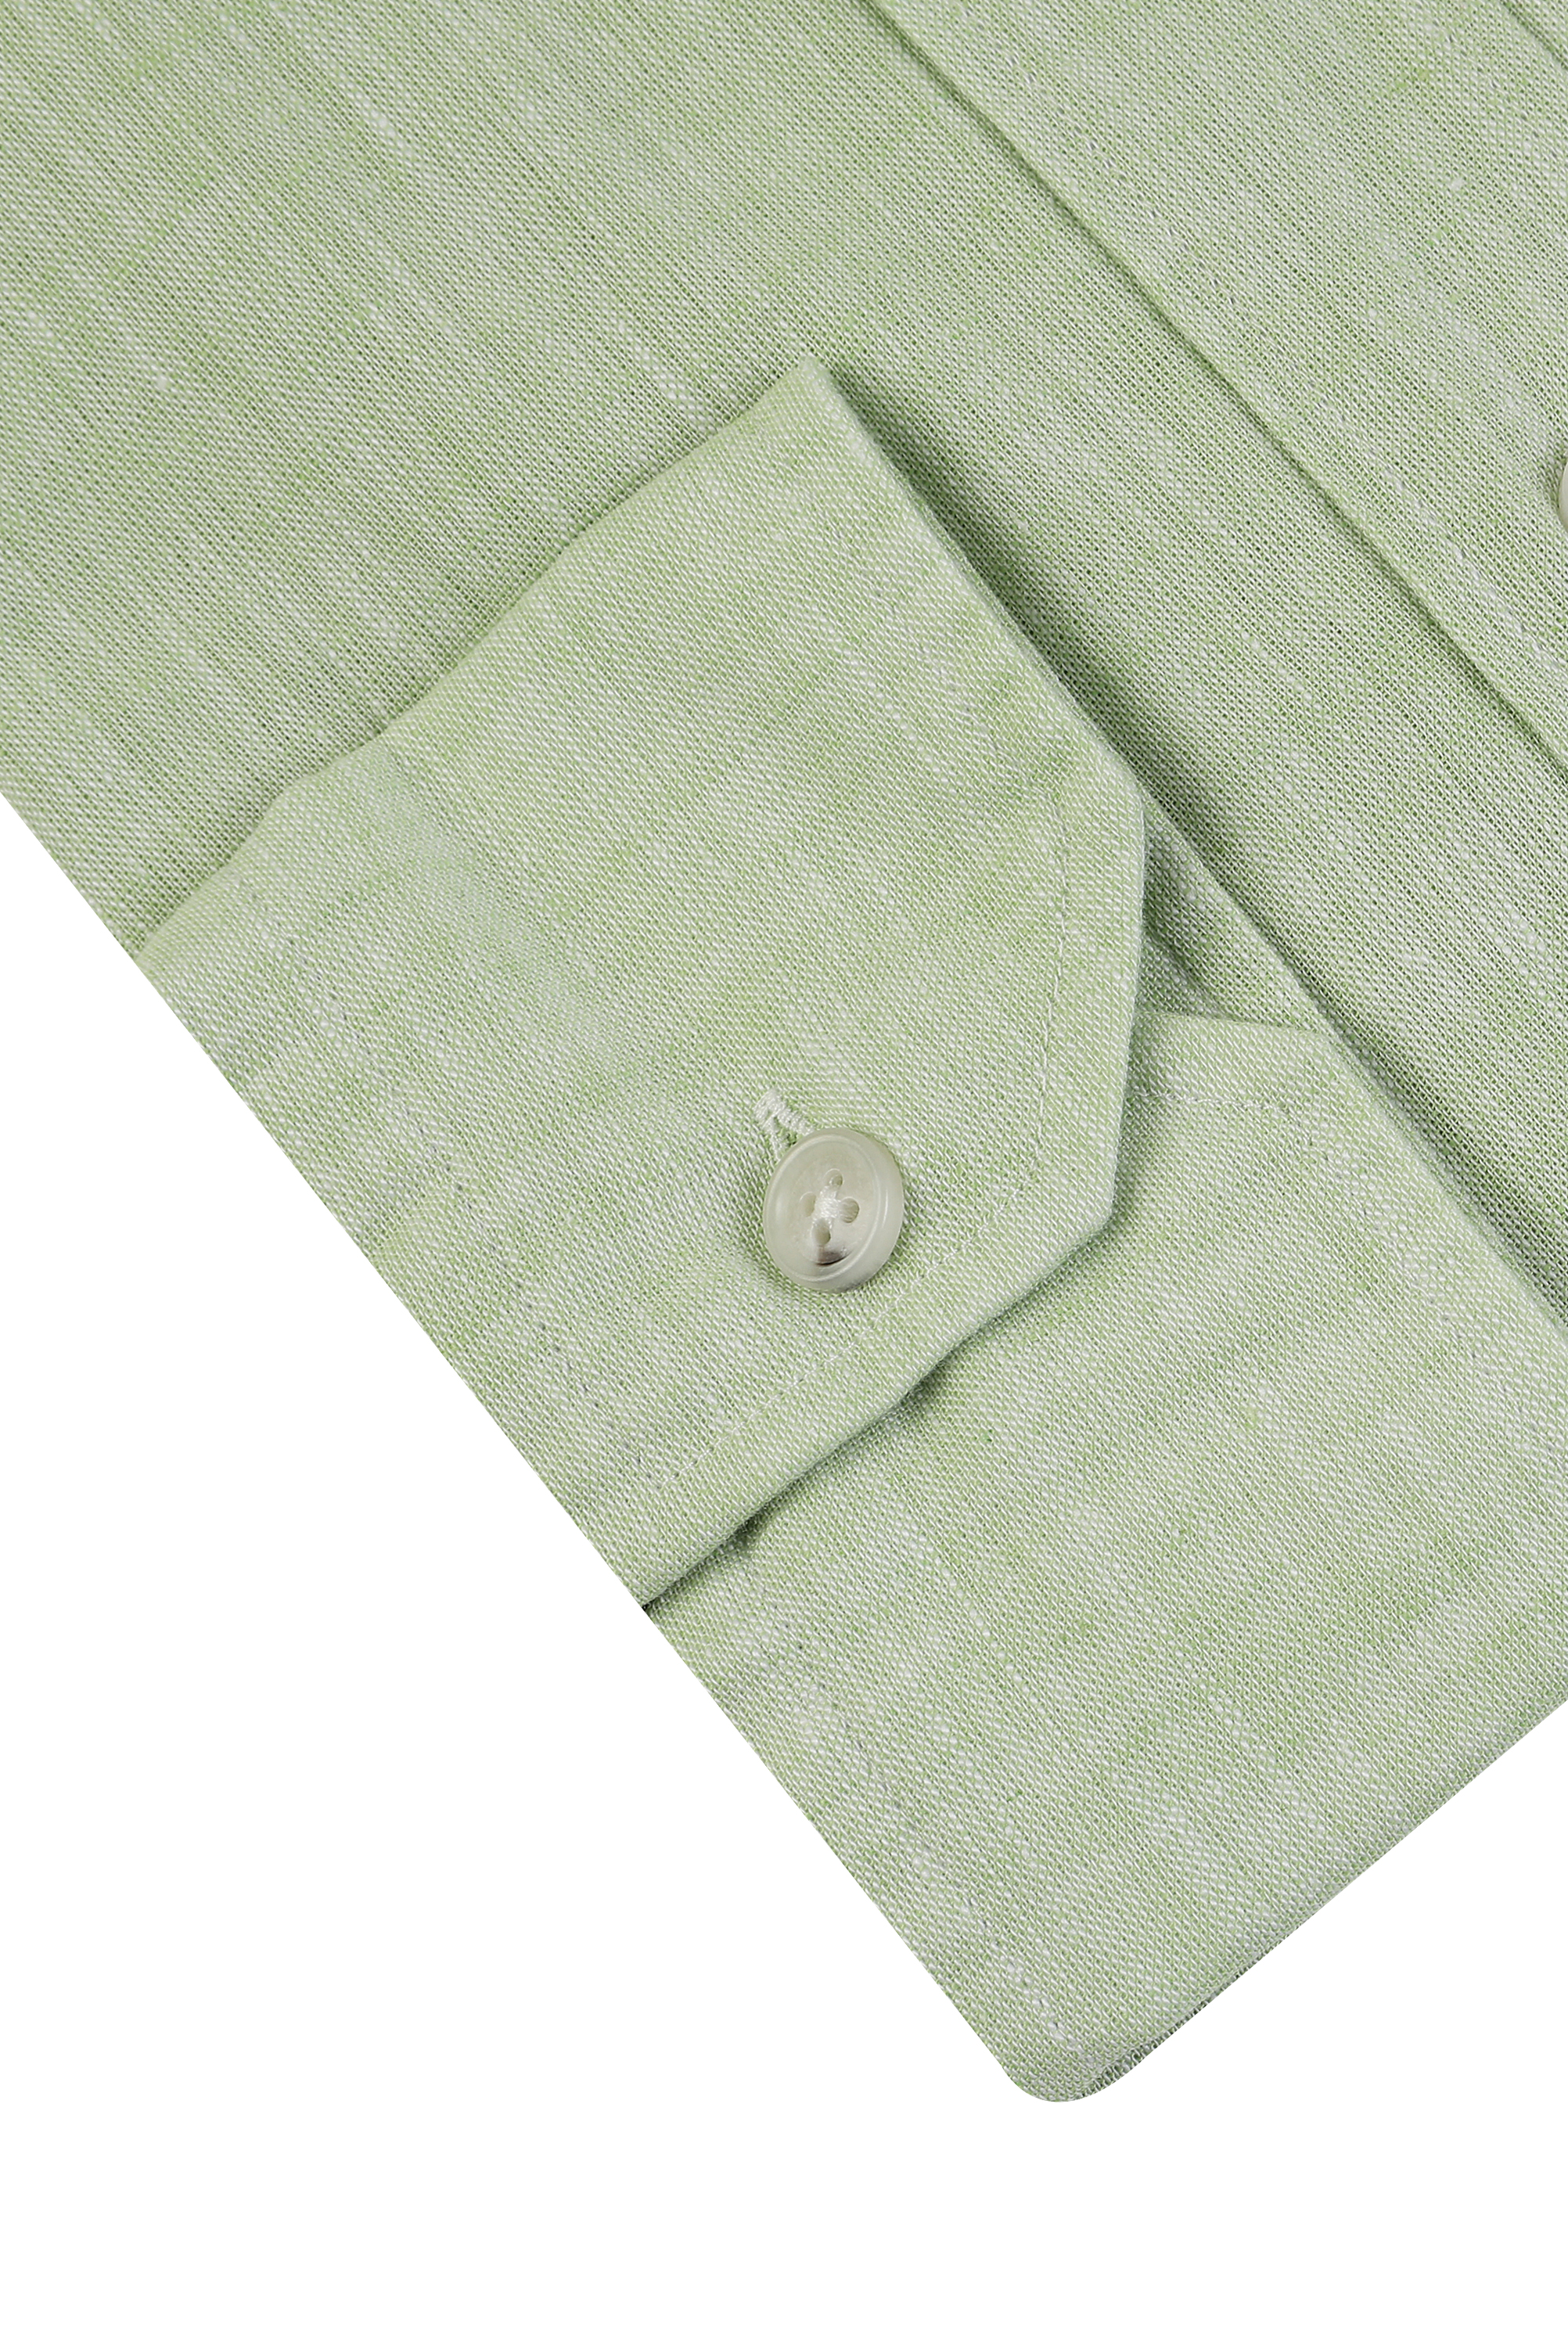 Damat Tween Damat Comfort Yeşil Düz Gömlek. 4